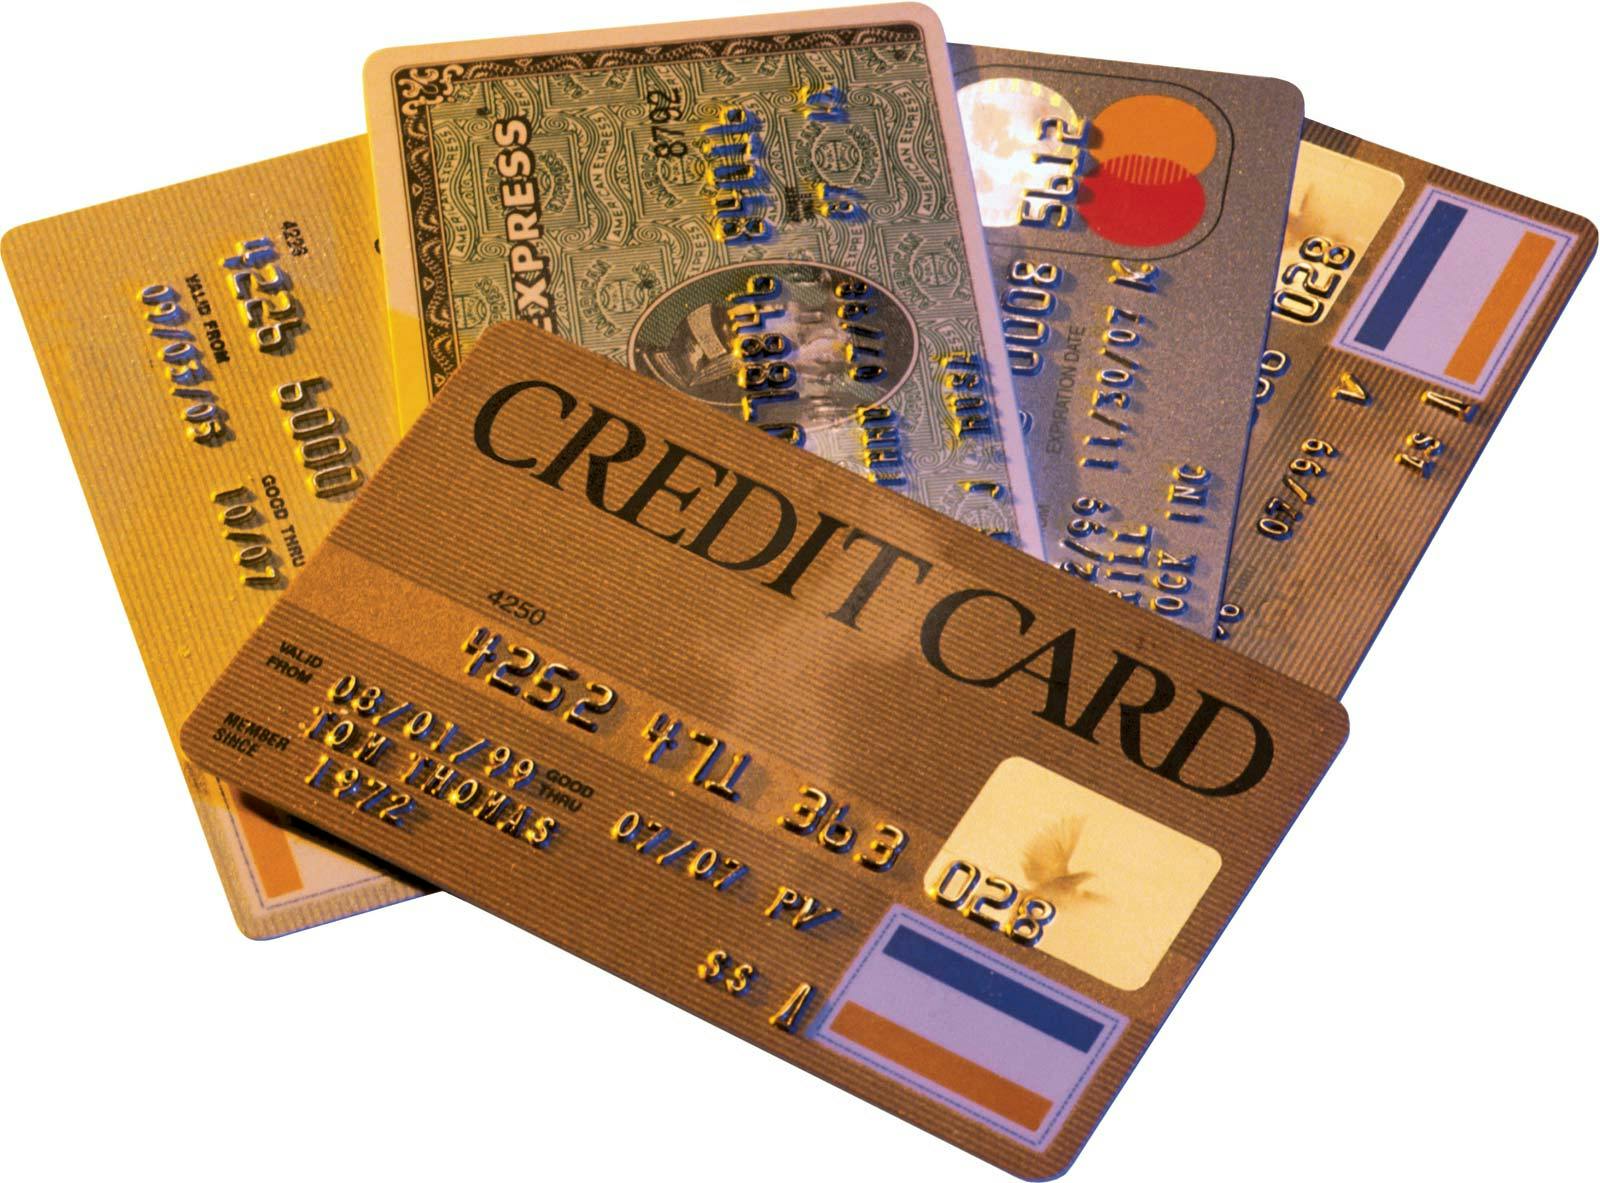 Hitelkártya – hogyan működik? Kezdők útmutatója